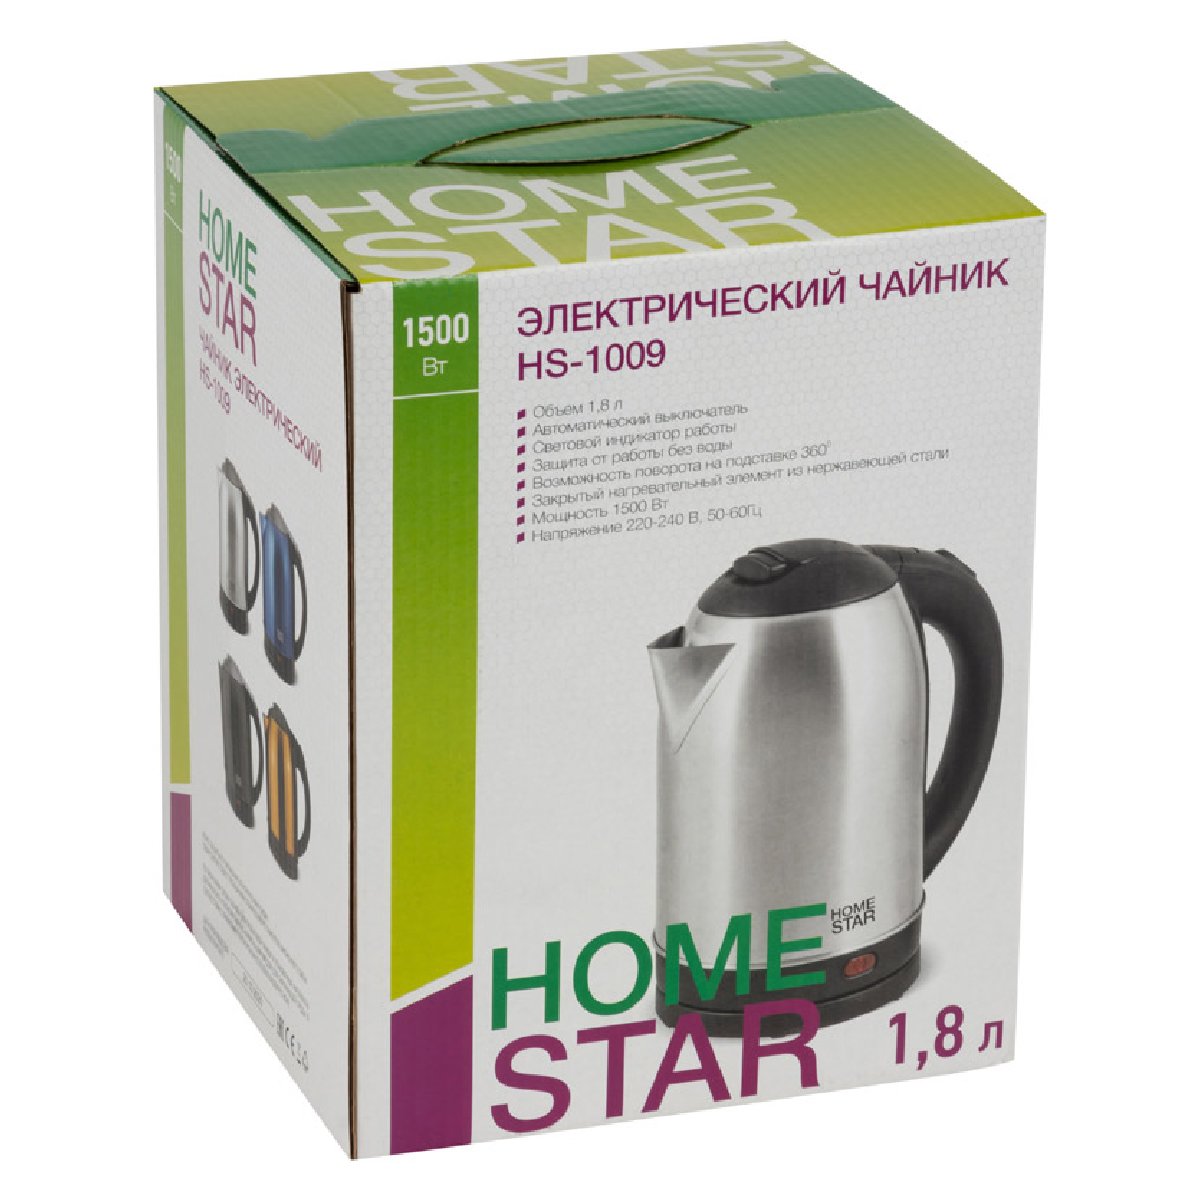 Homestar HS-1009 чайник электрический дисковый, 1.8л, 1500Вт, нержавеющая сталь (002829)